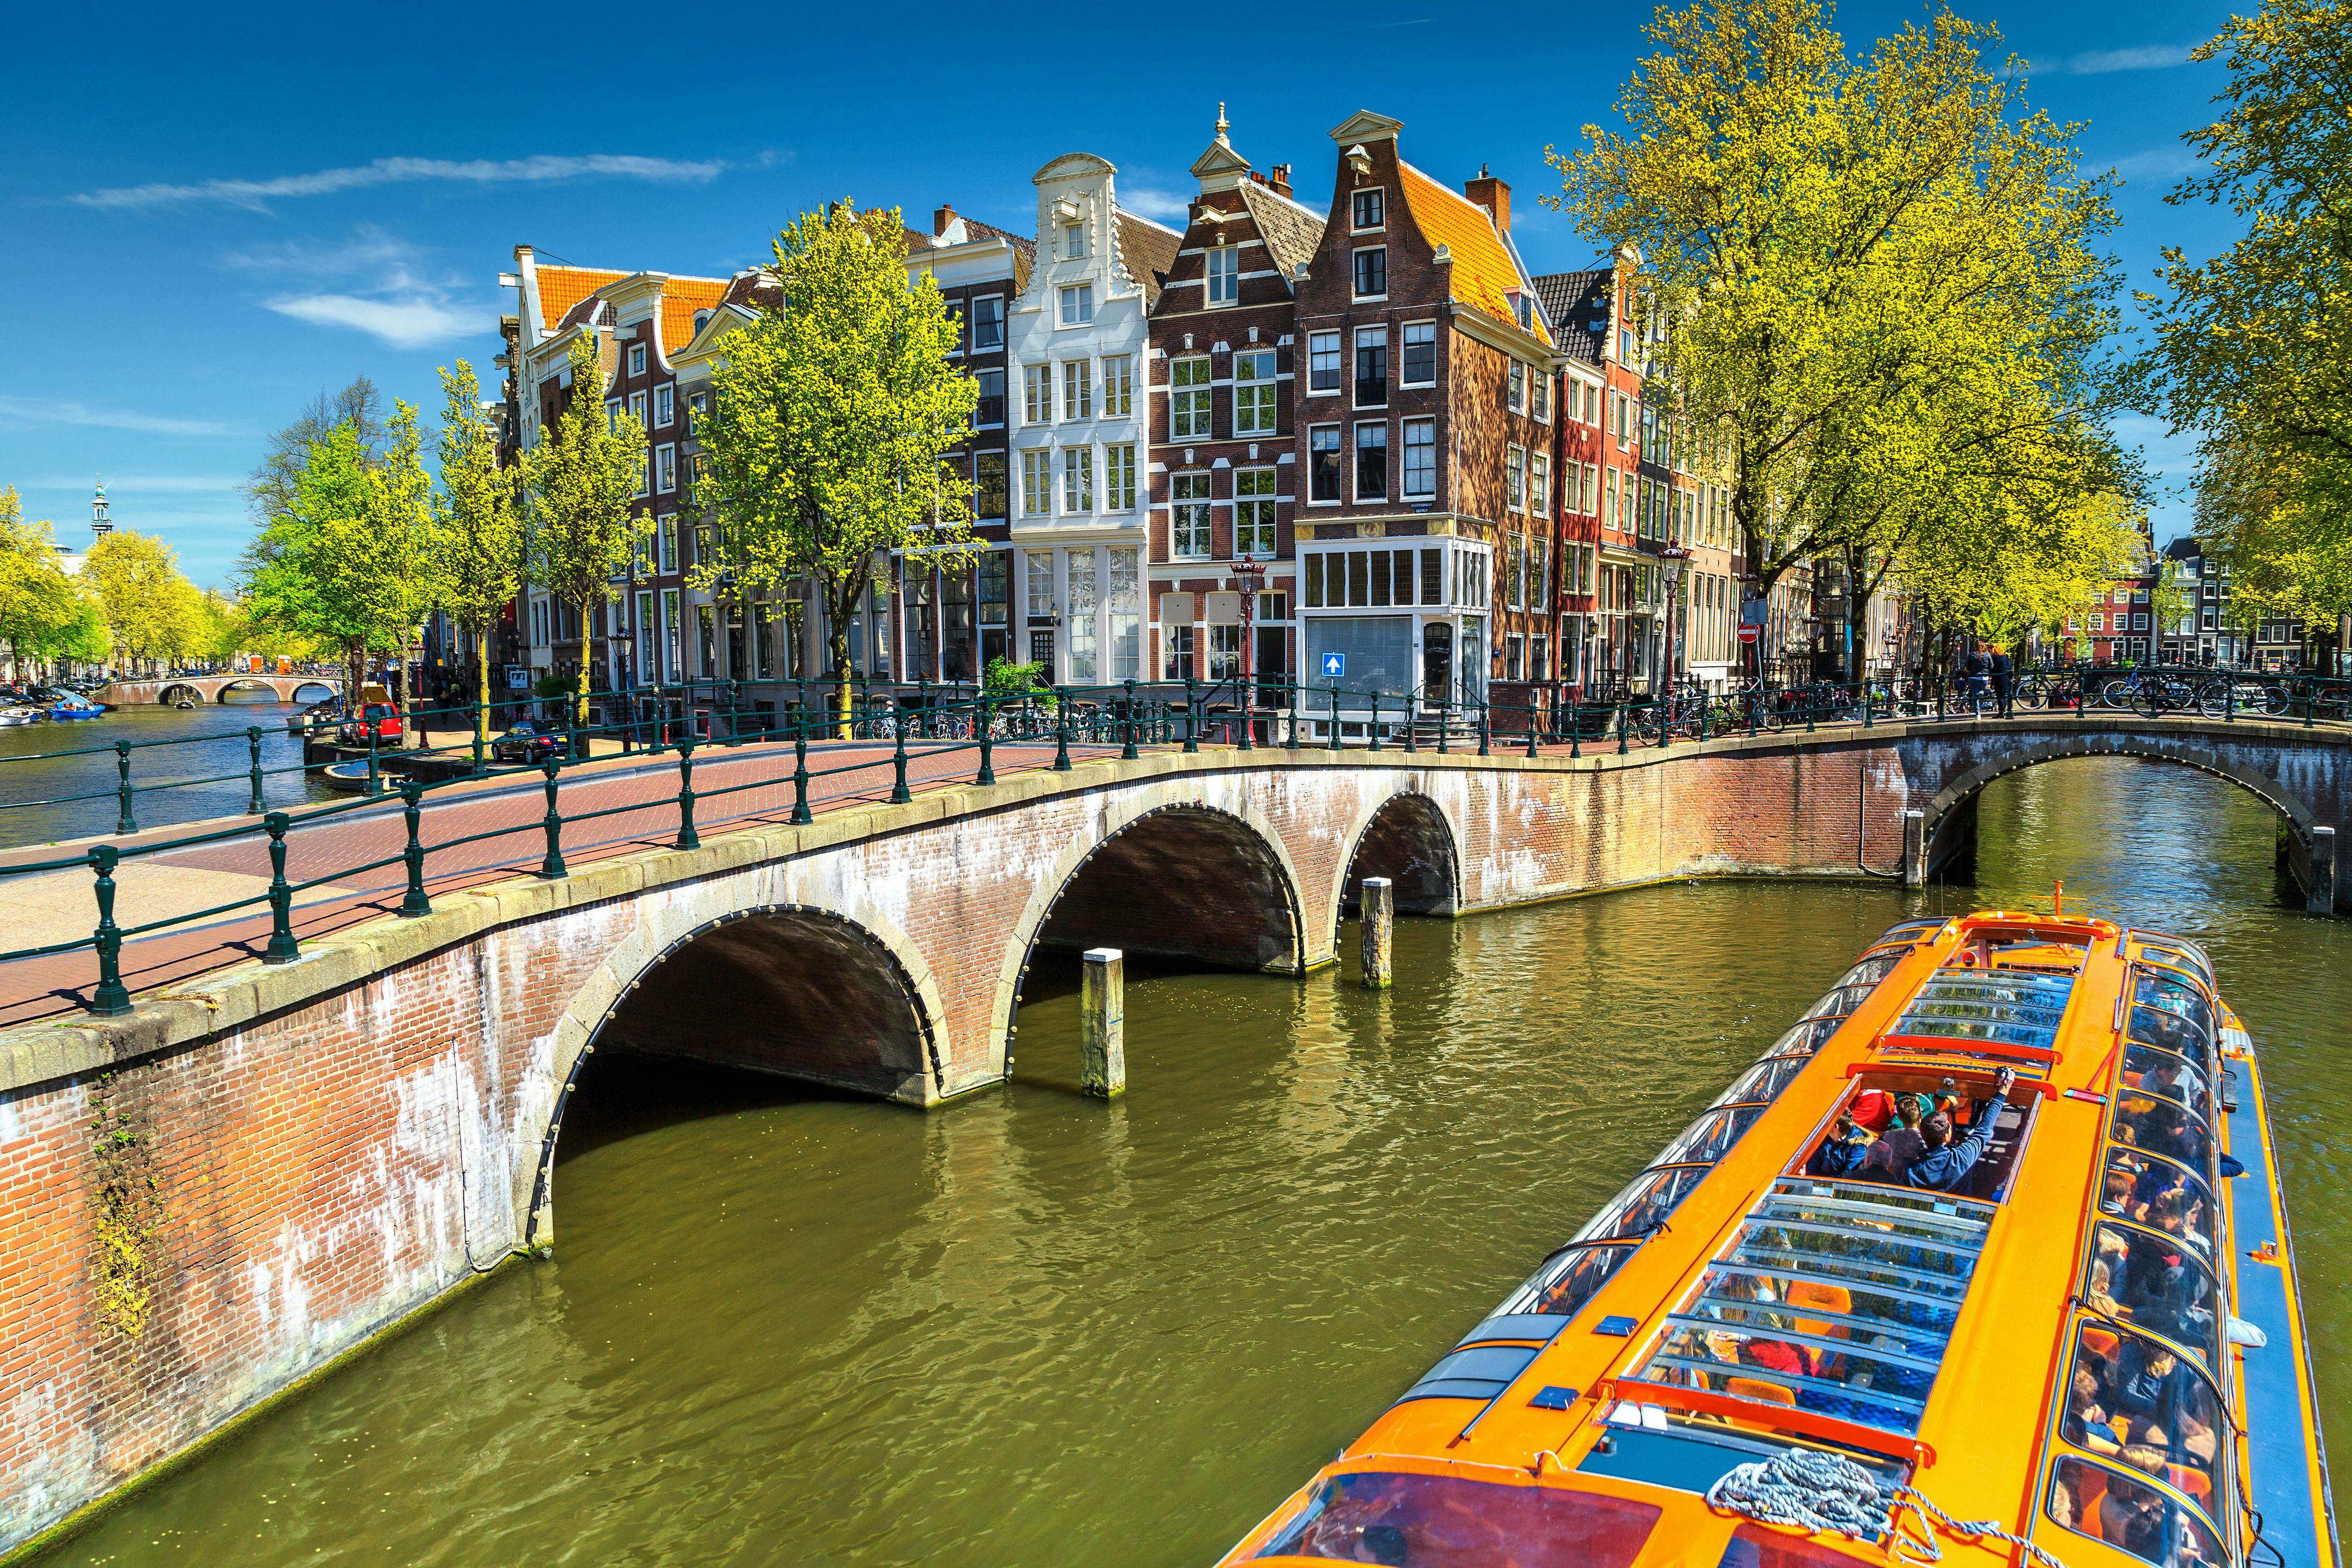 Crucero por los canales de Ámsterdam UNESCO